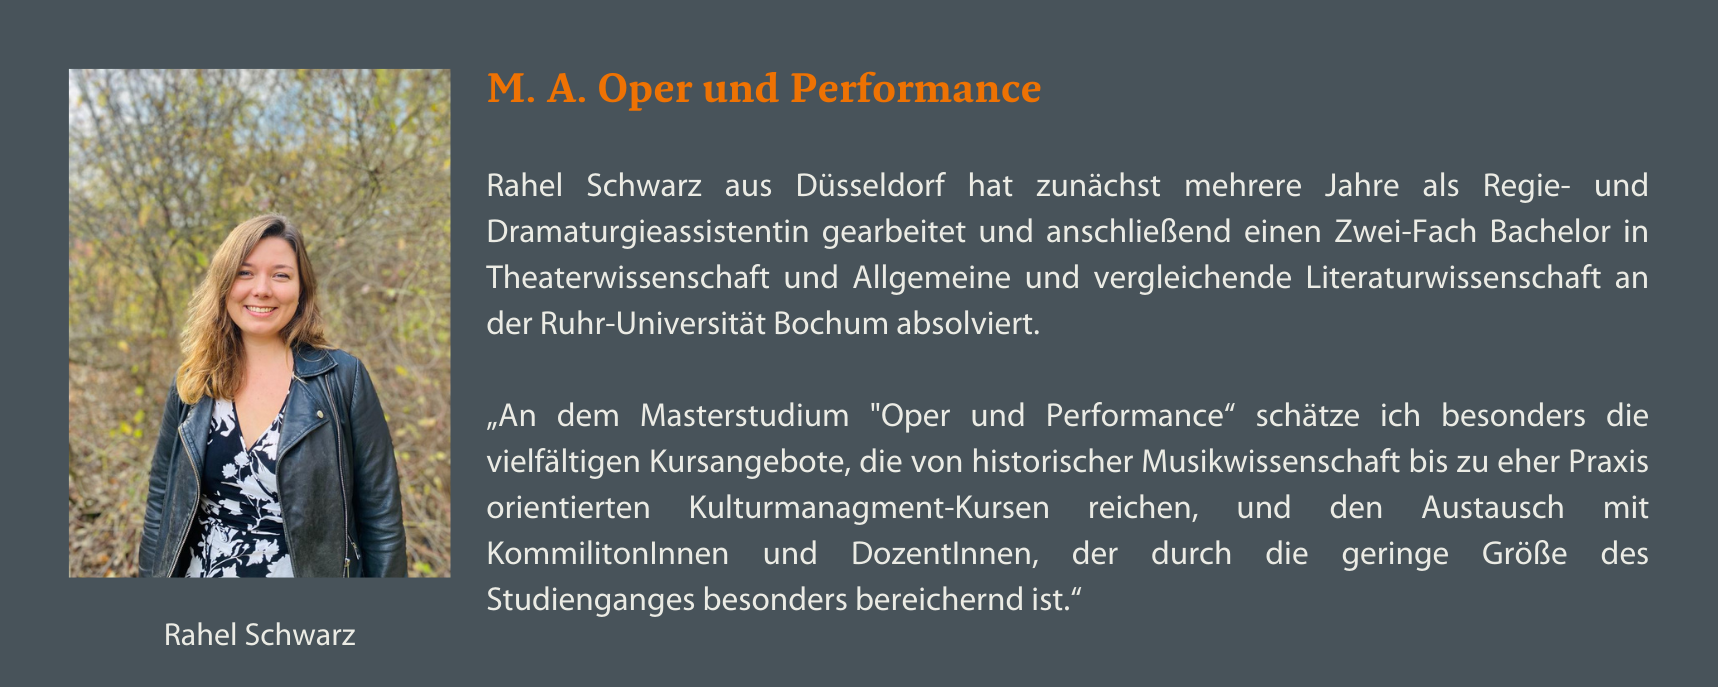 M. A. Oper und Performance Rahel Schwarz Statement